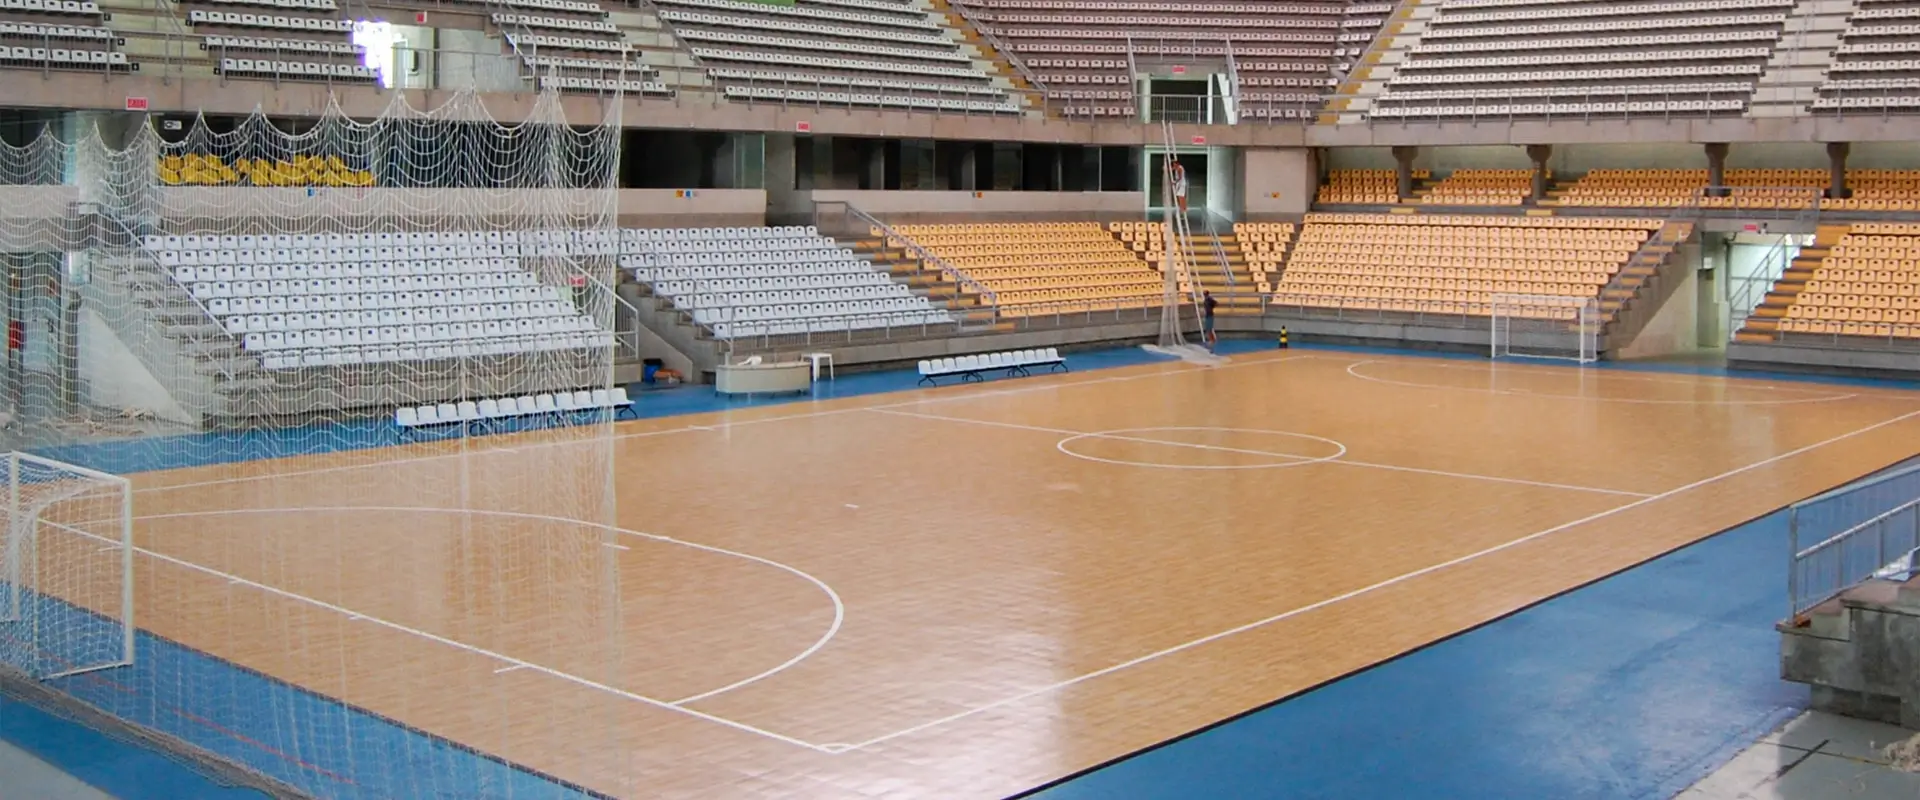 Futsal Arena in Brazil